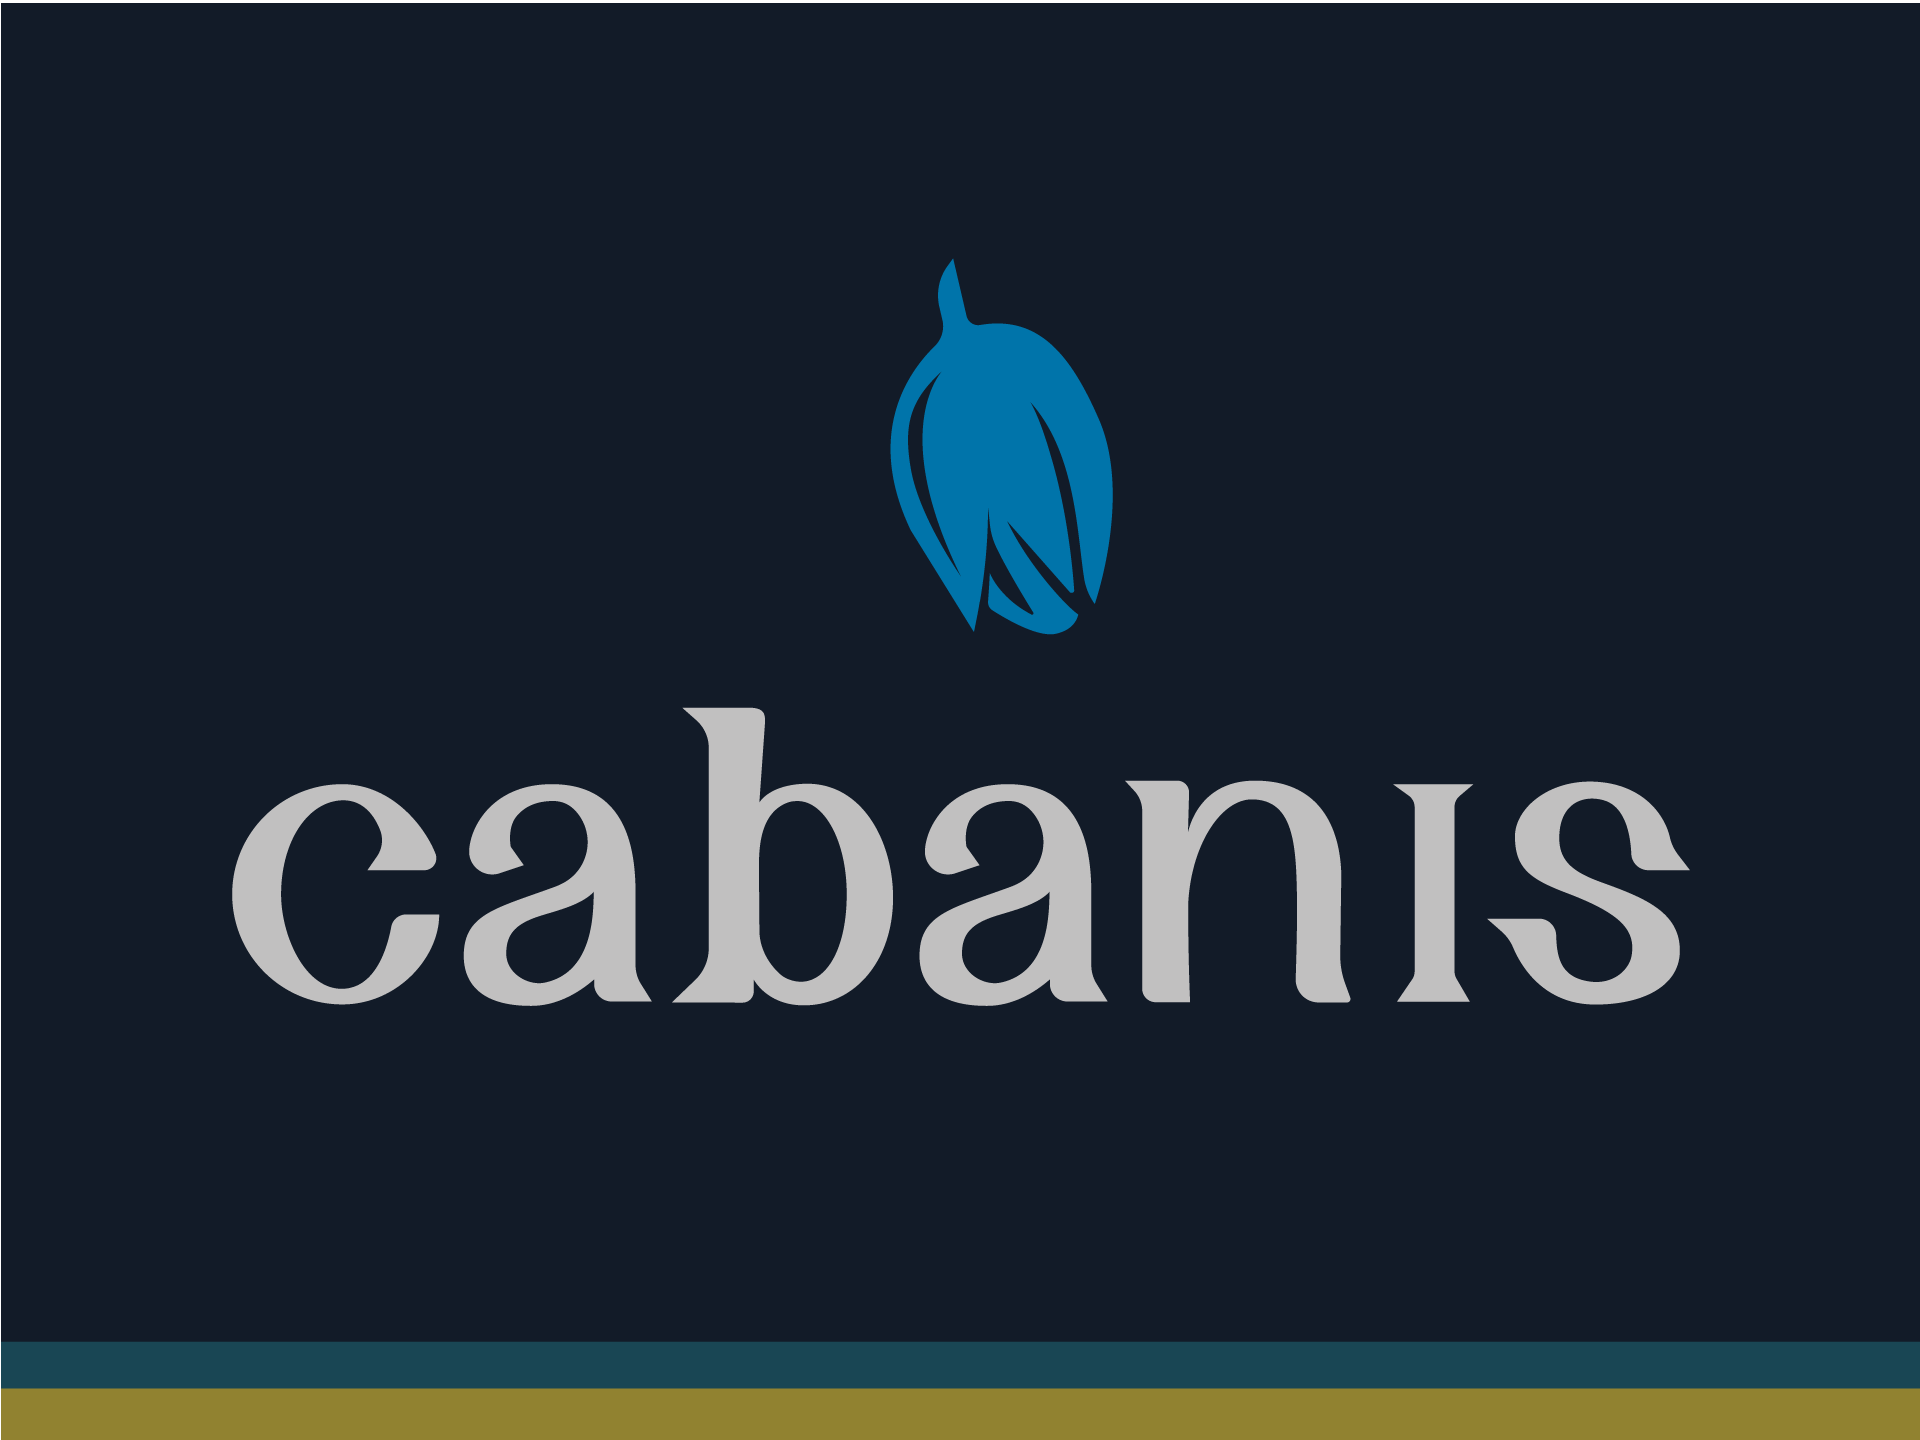 Cabanis concept design